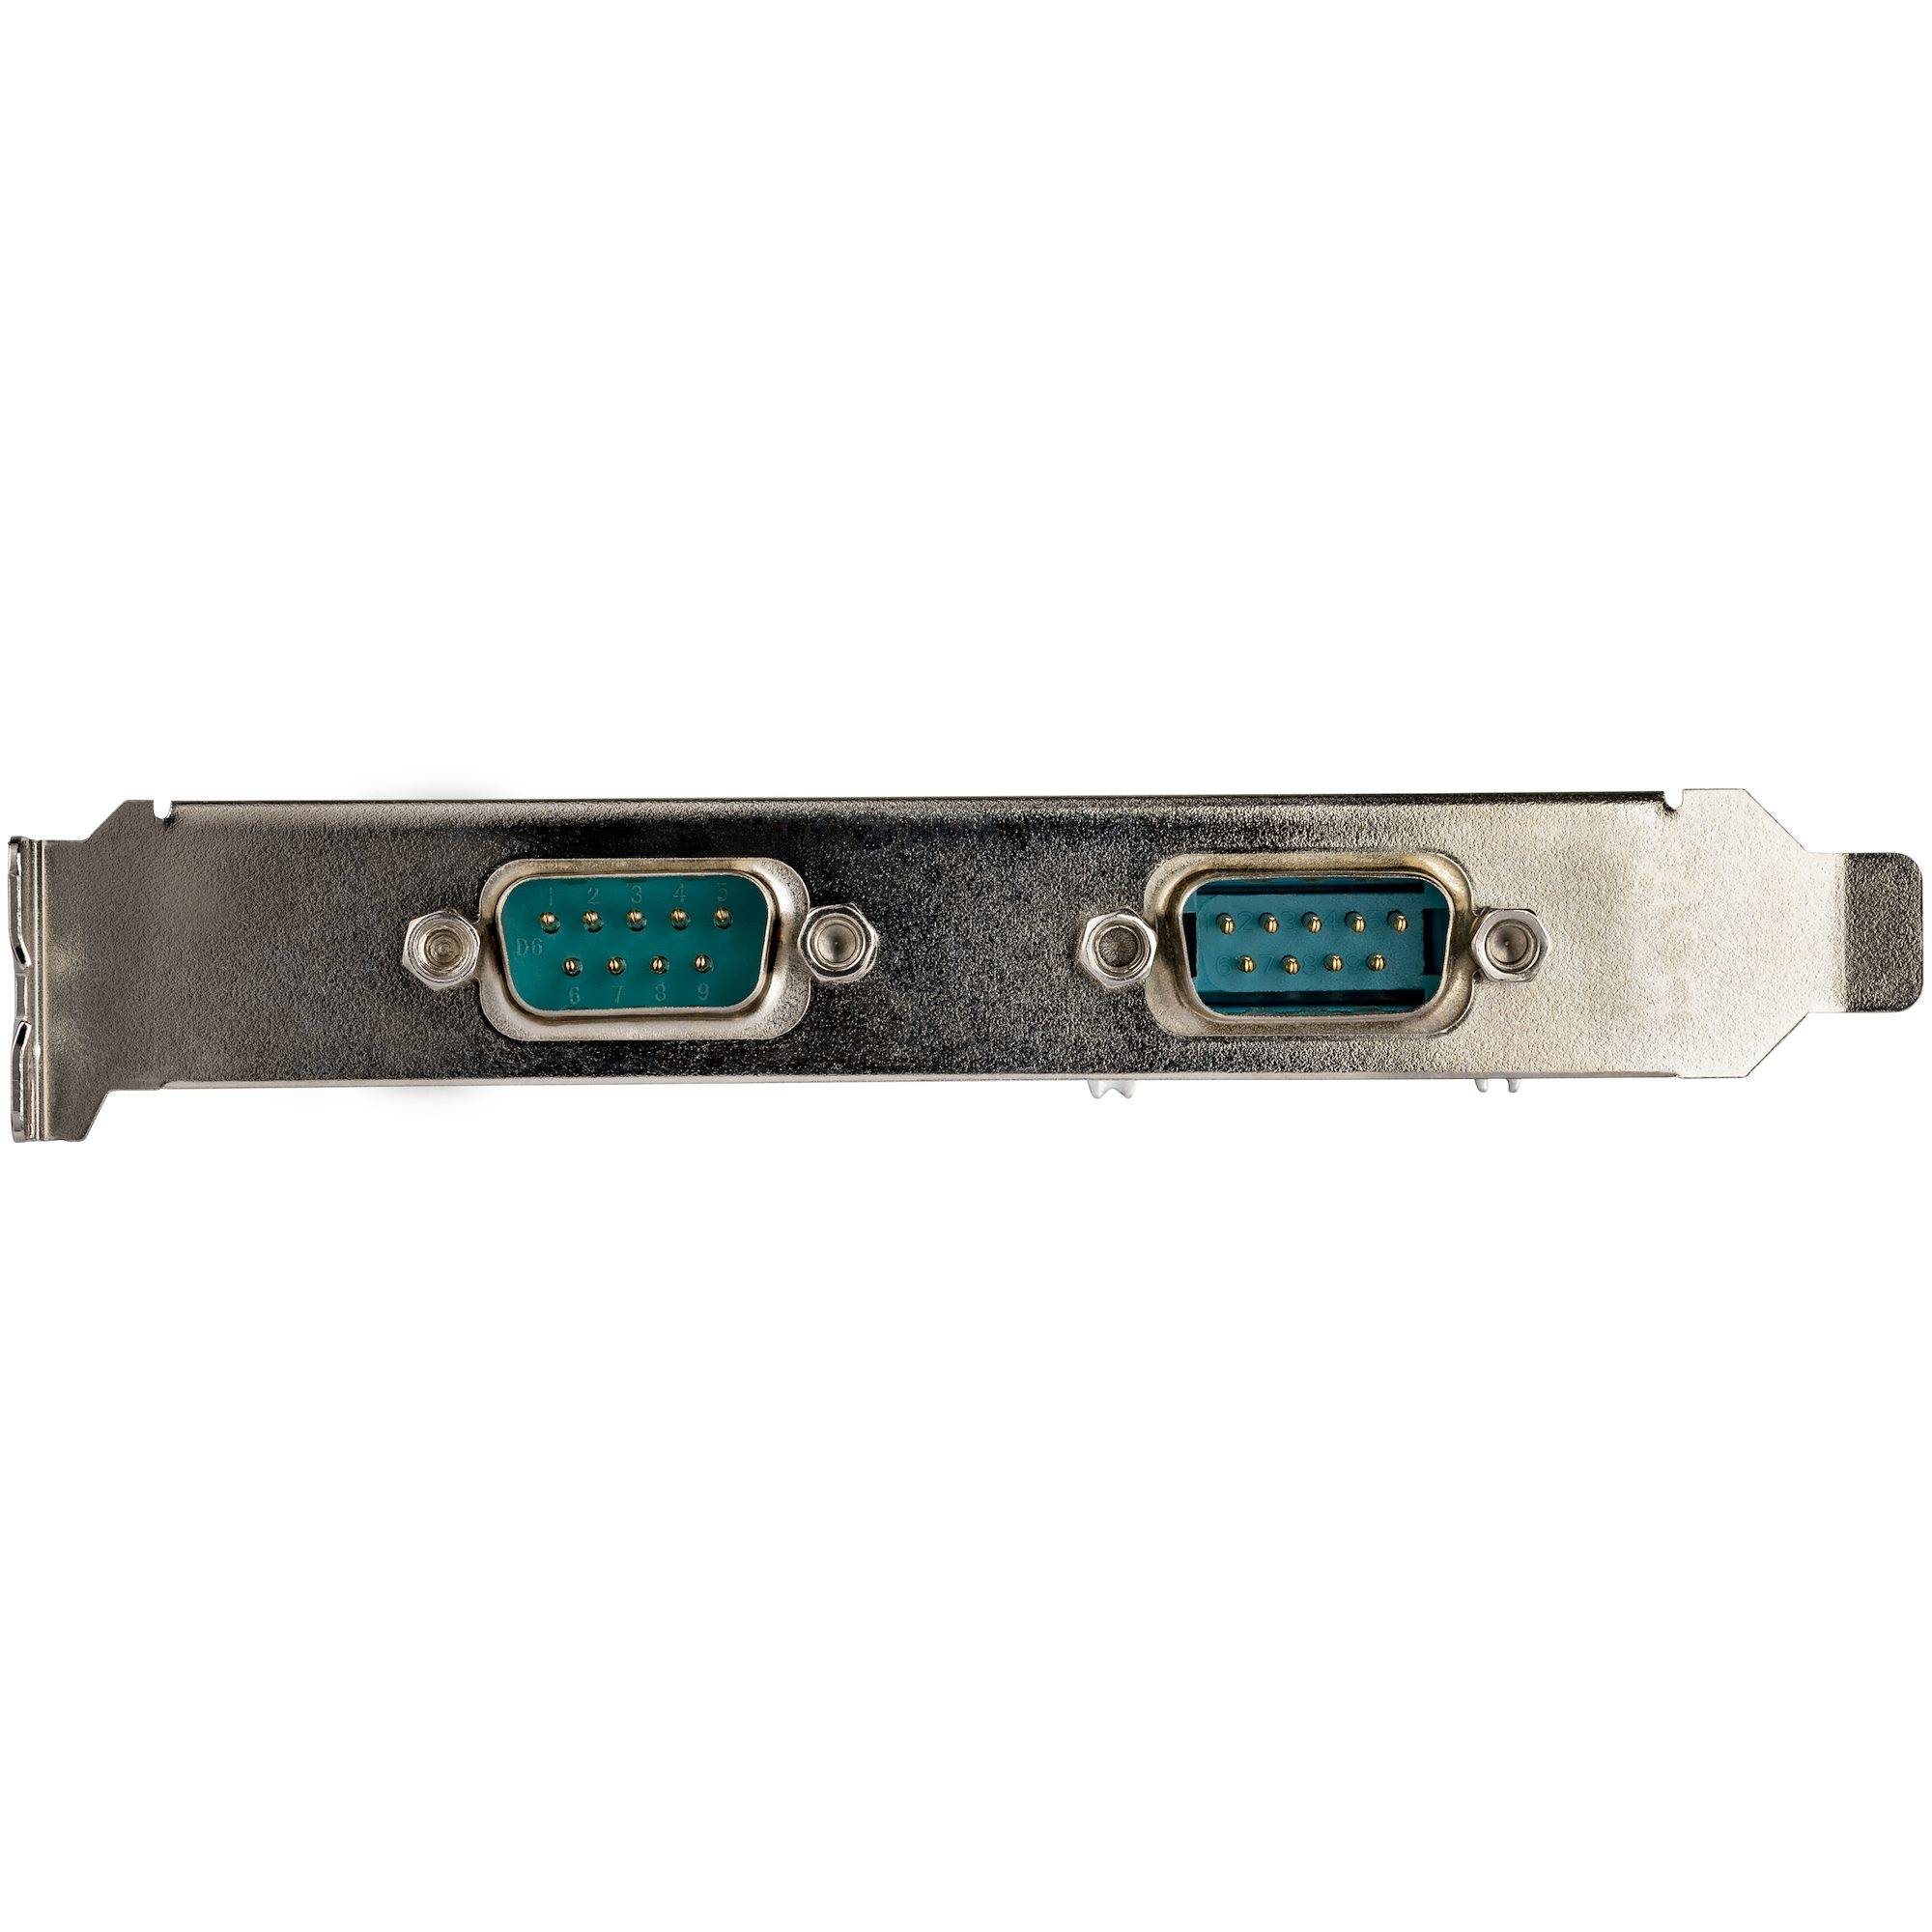 Rca Informatique - image du produit : 2 PORT PCI-E RS232 SERIAL CARD 16950 UART